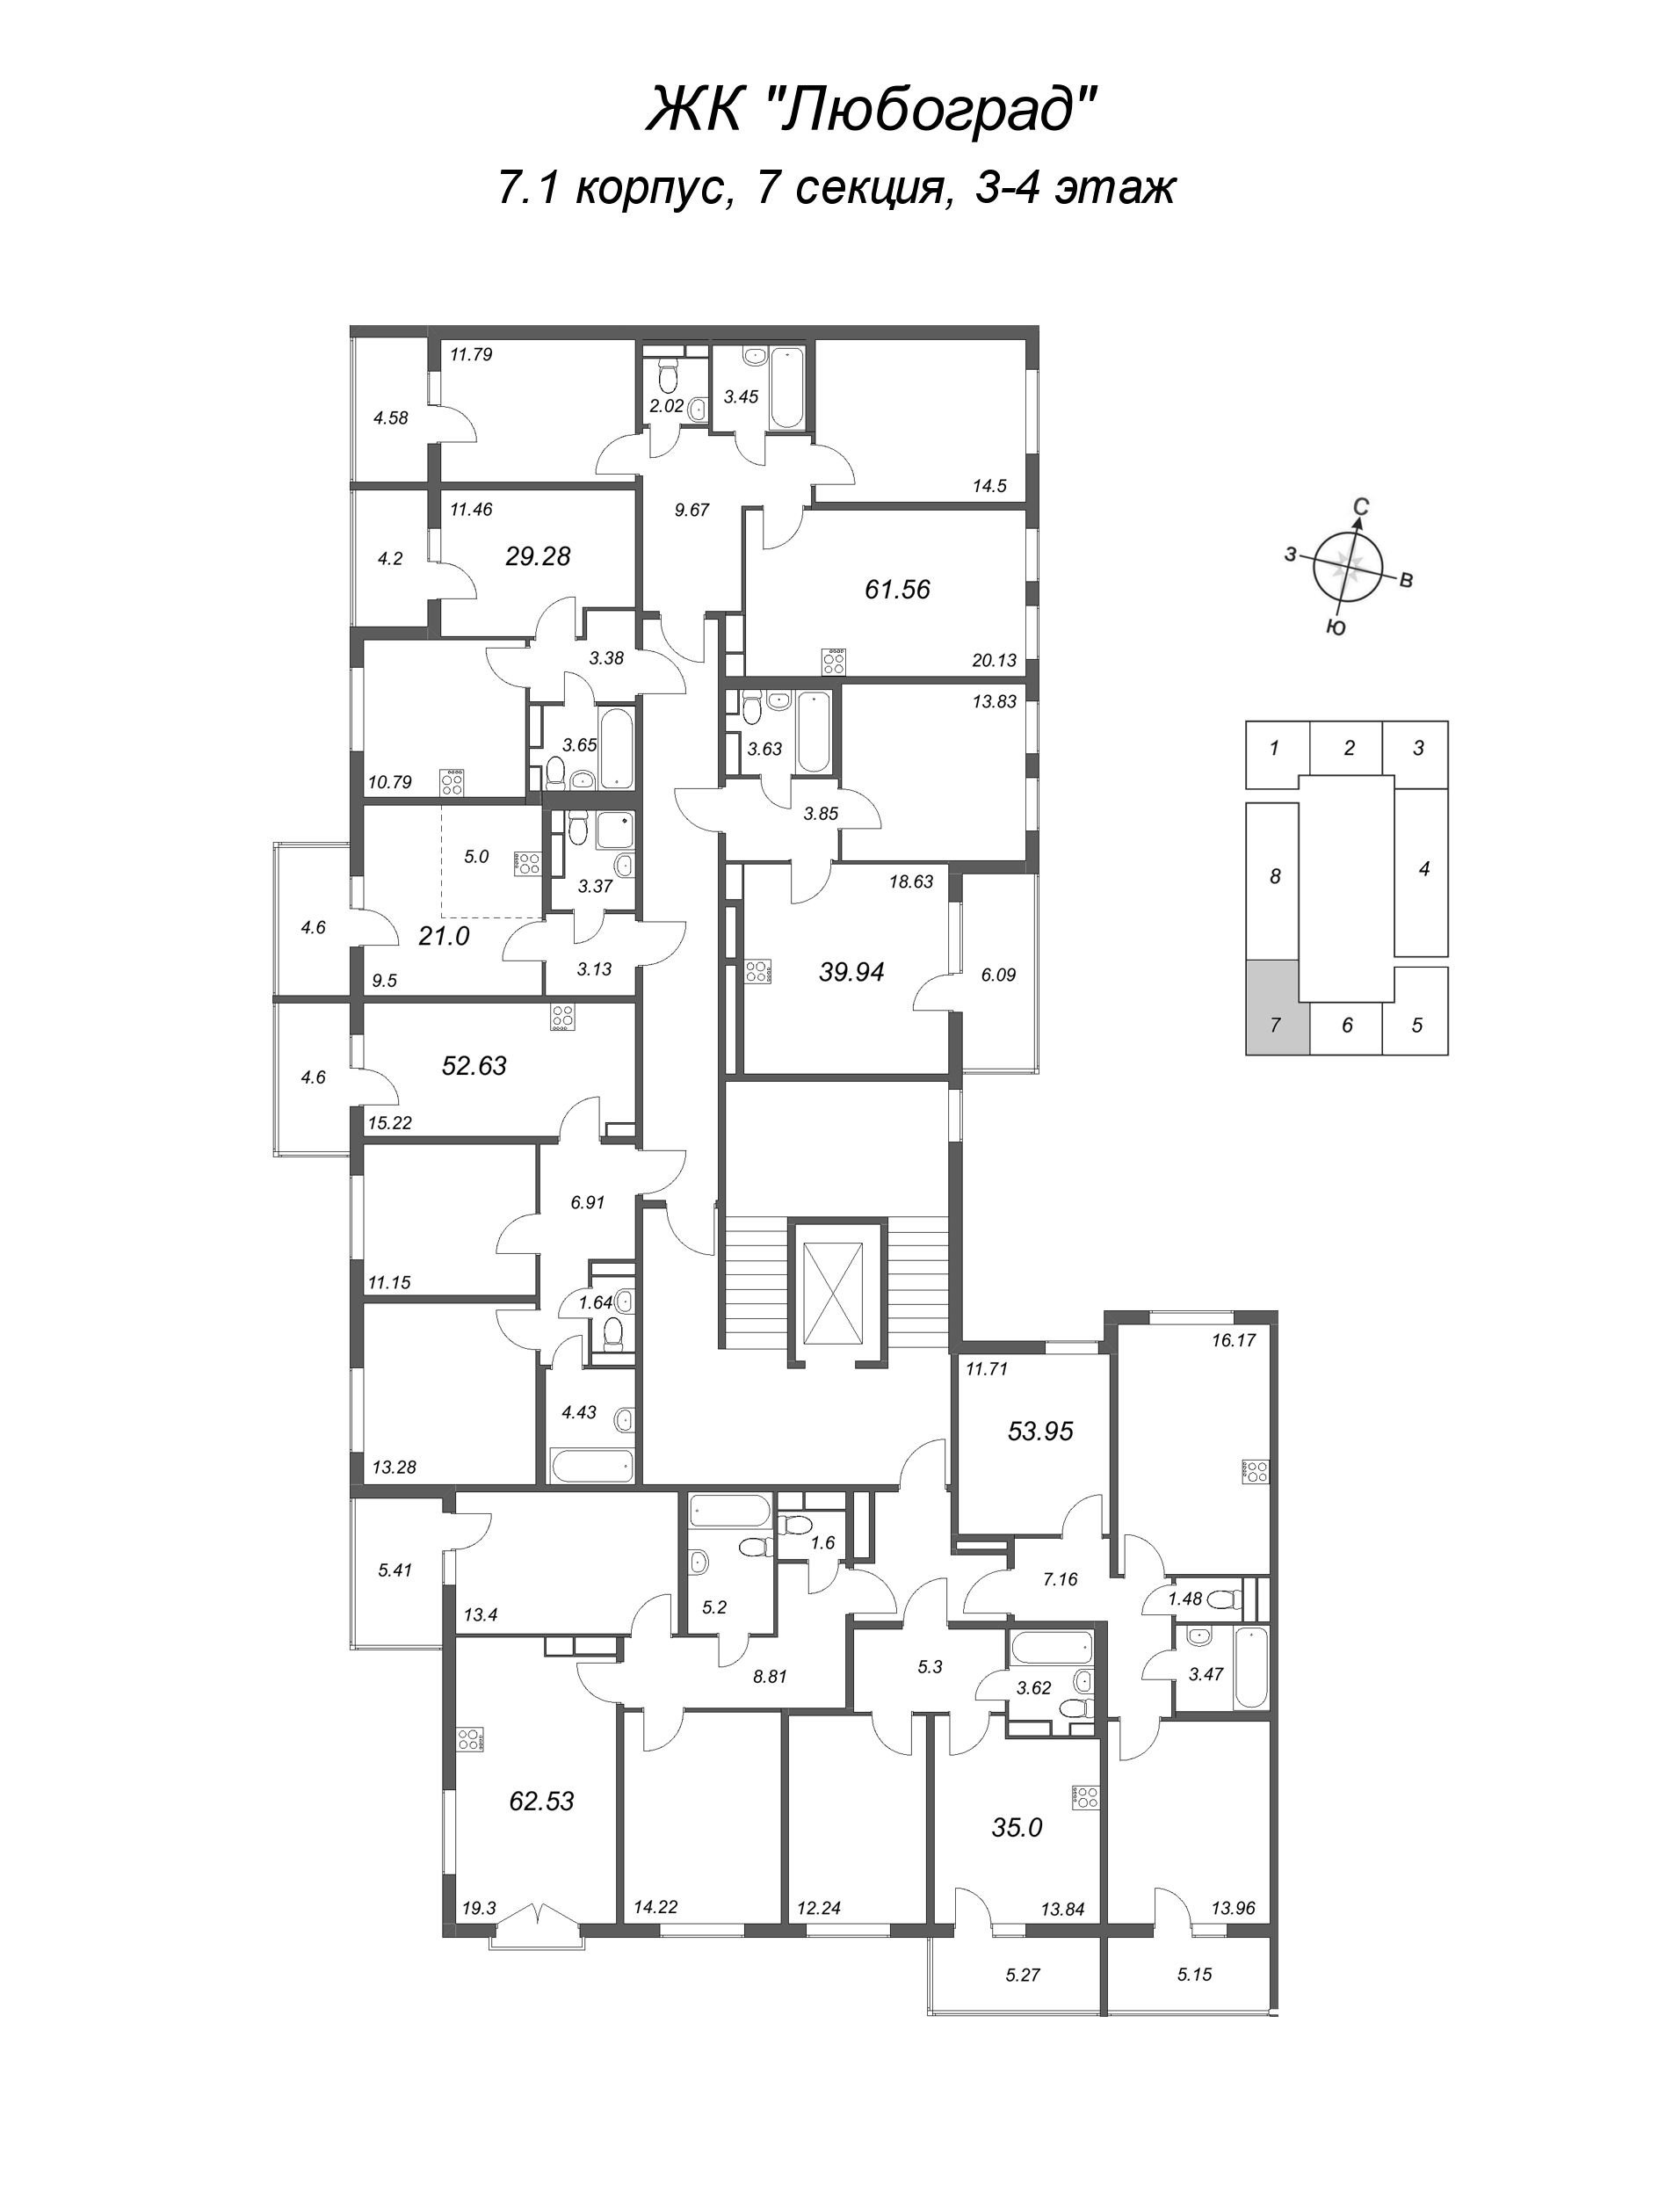 3-комнатная (Евро) квартира, 52.63 м² в ЖК "Любоград" - планировка этажа